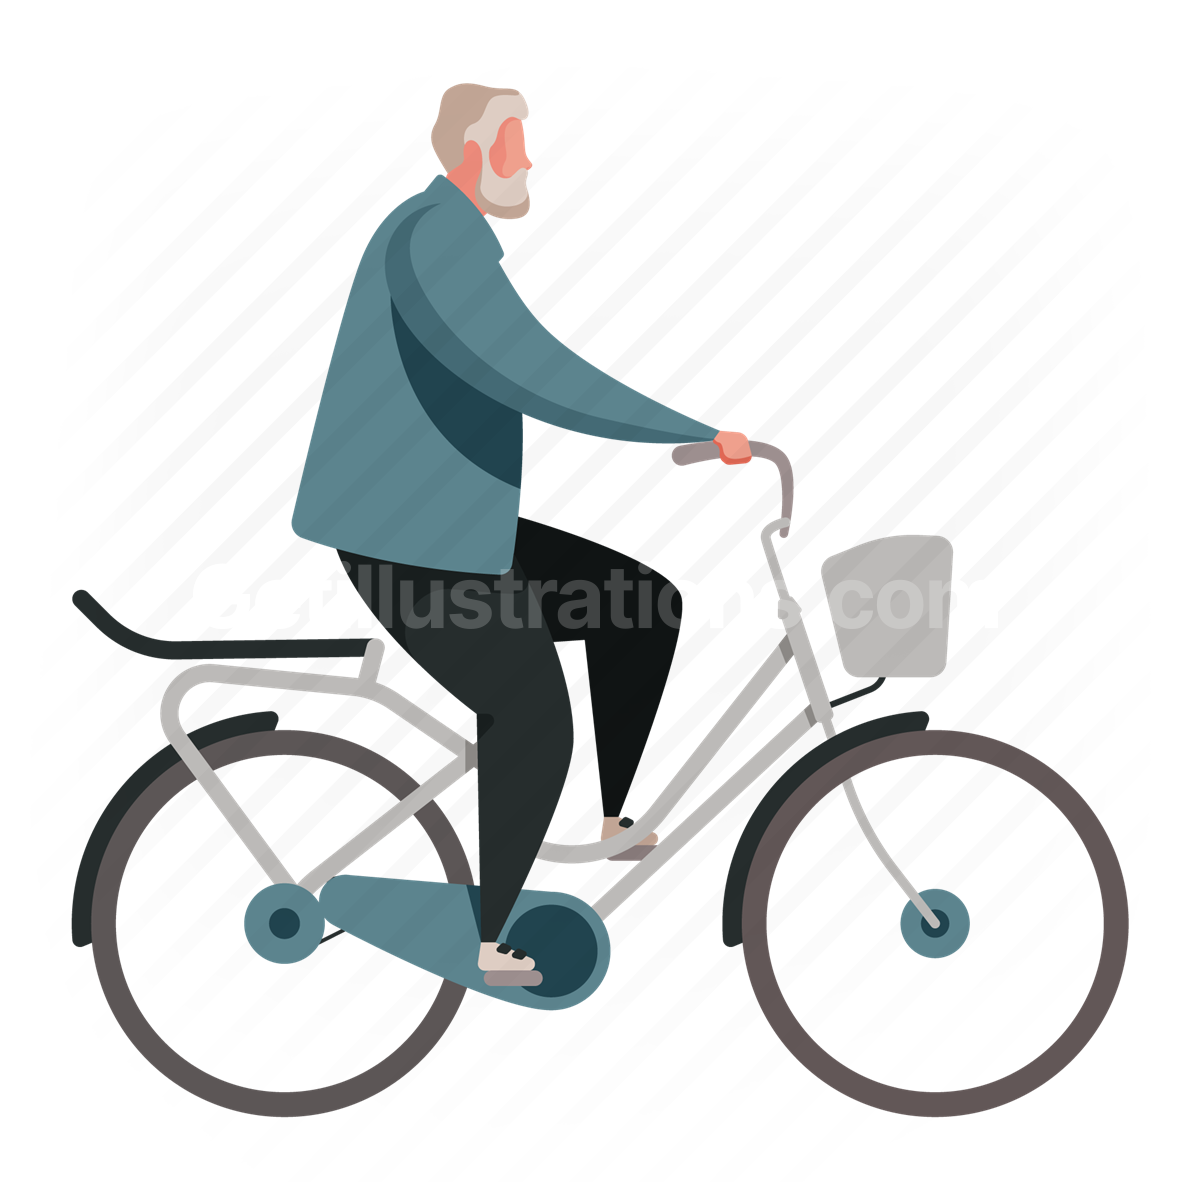 man, bike, bicycle, transport, travle